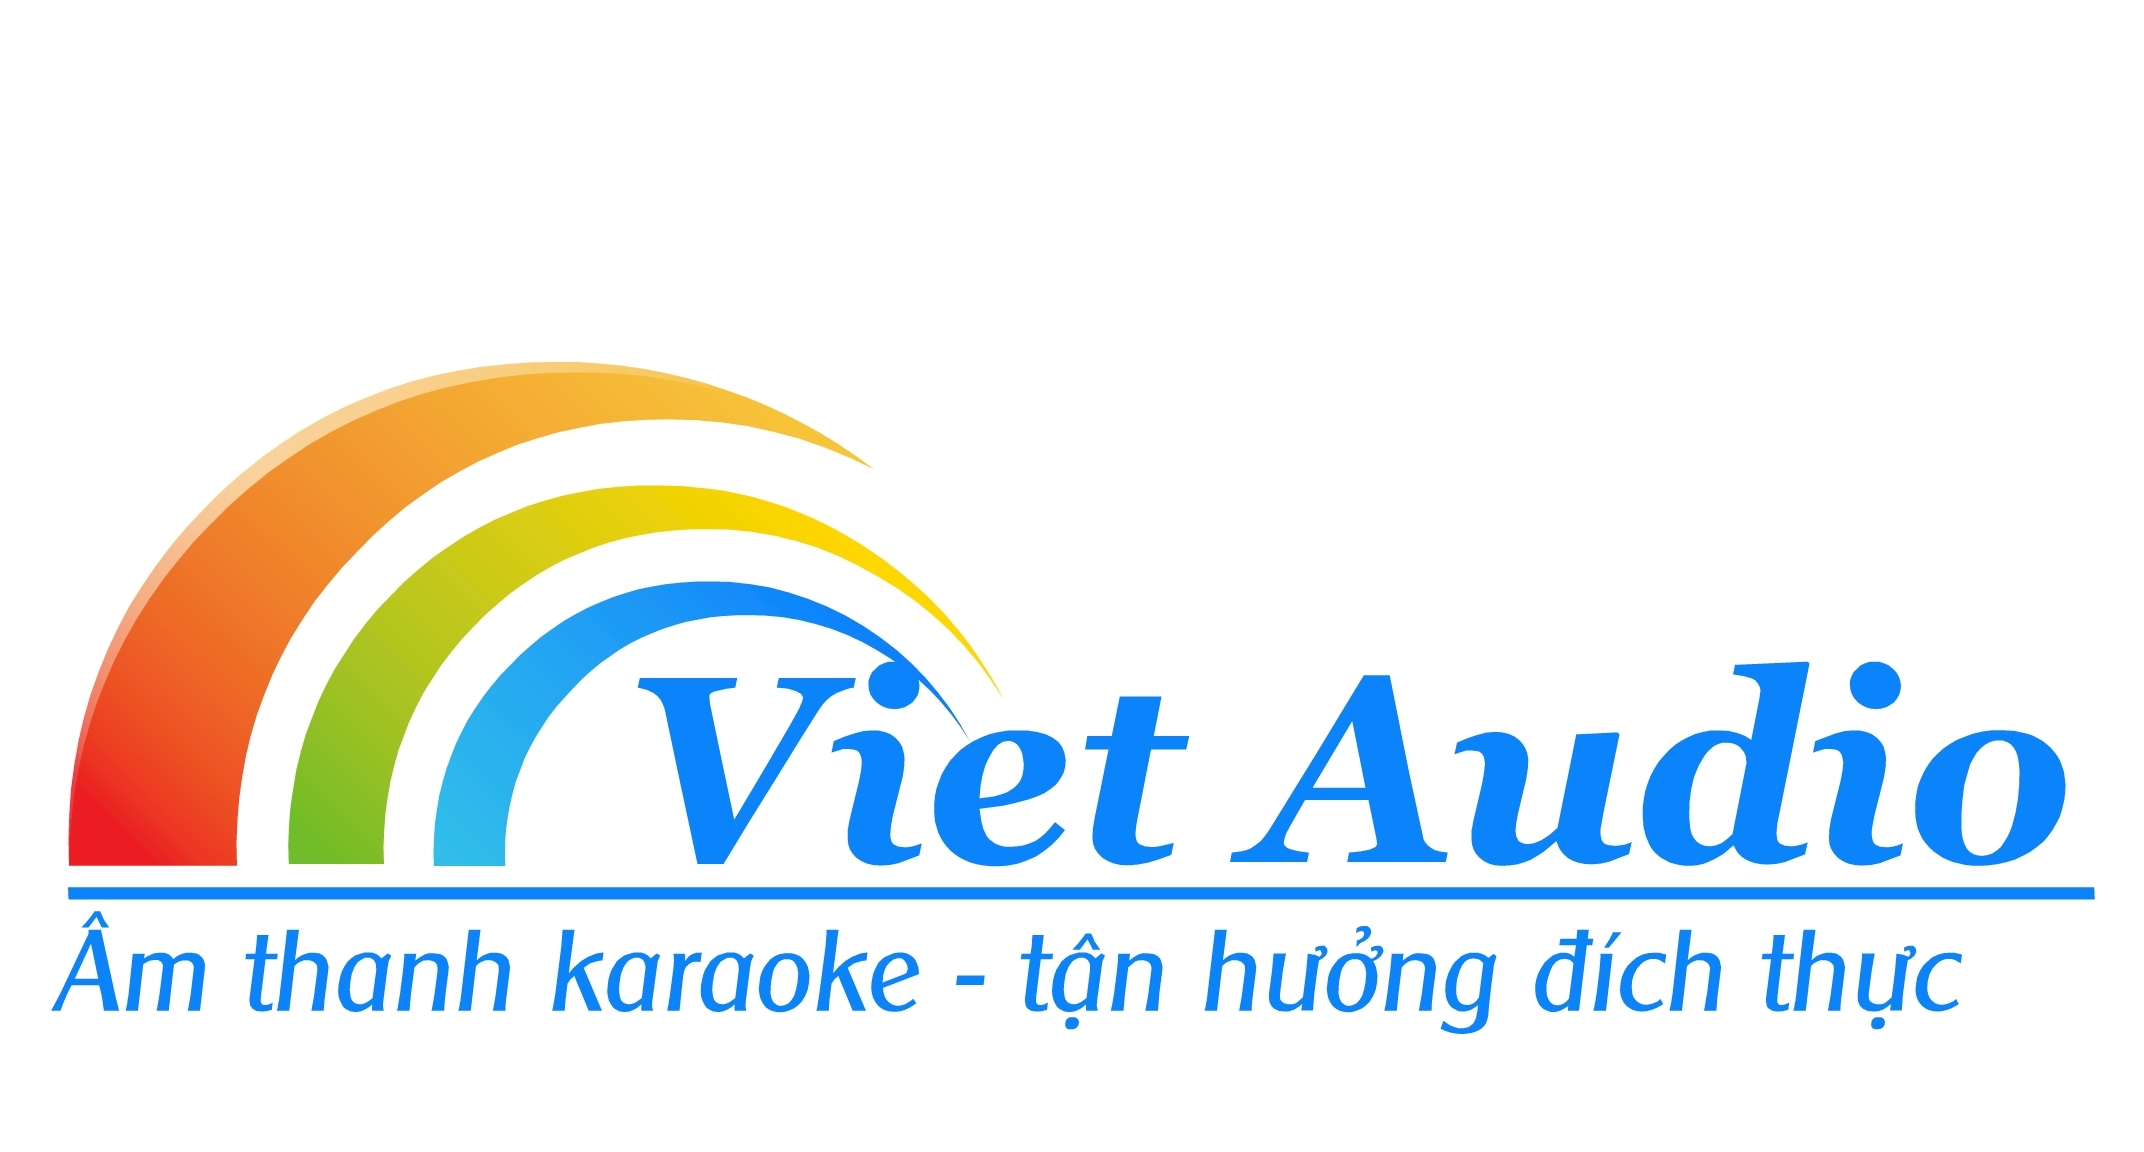 Giới thiệu Nhạc Việt